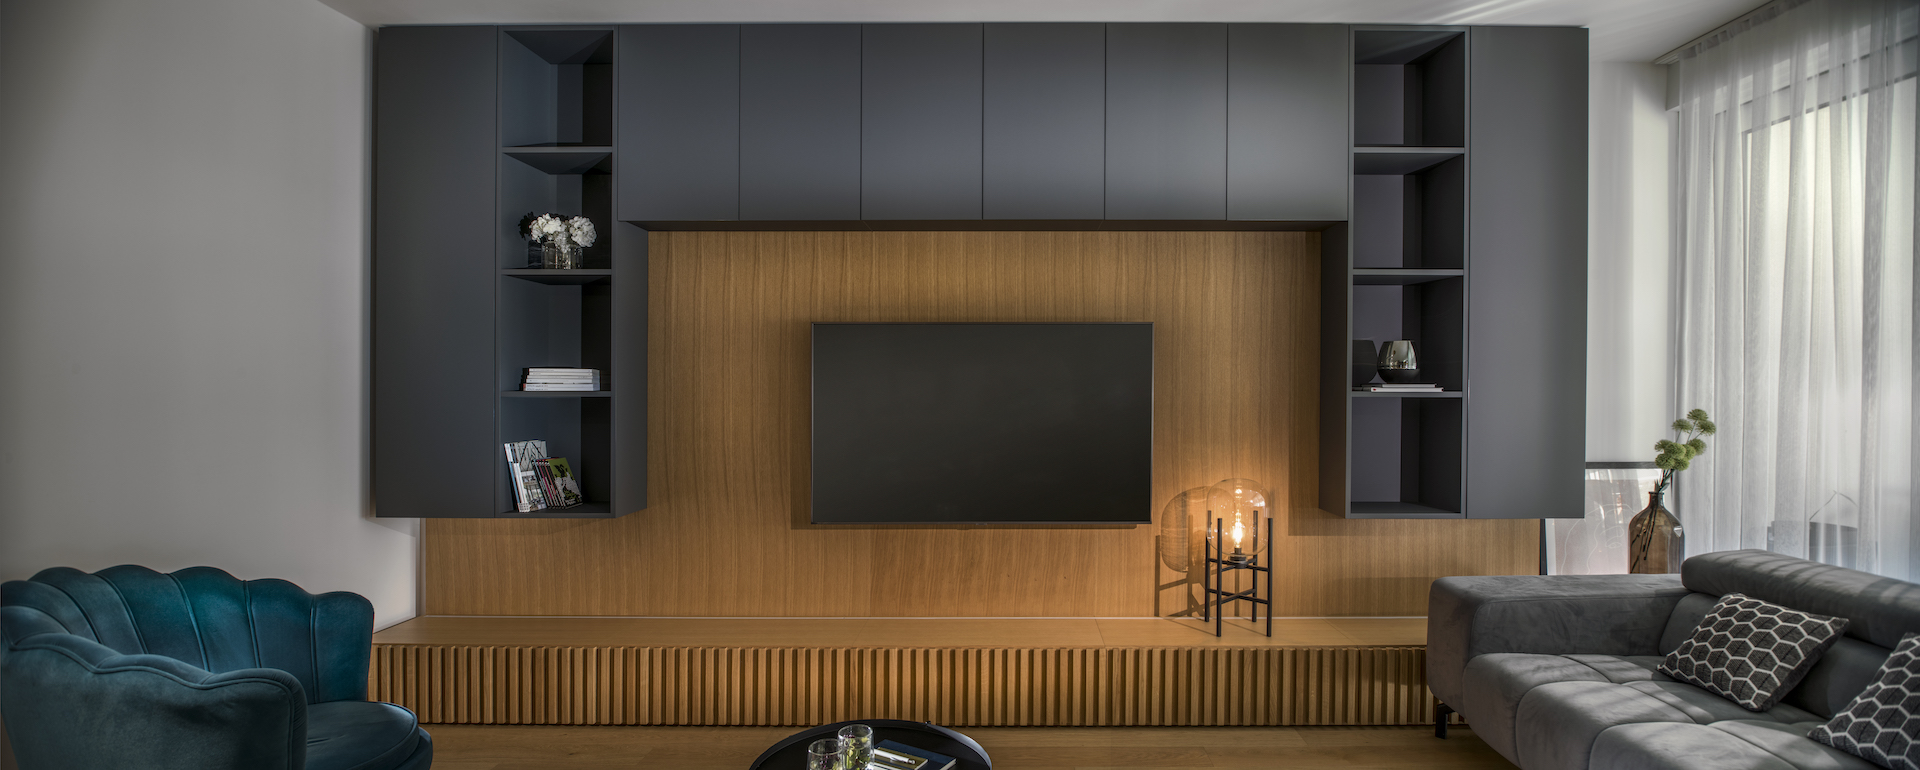 Wohnzimmer mit eleganter TV-Wand